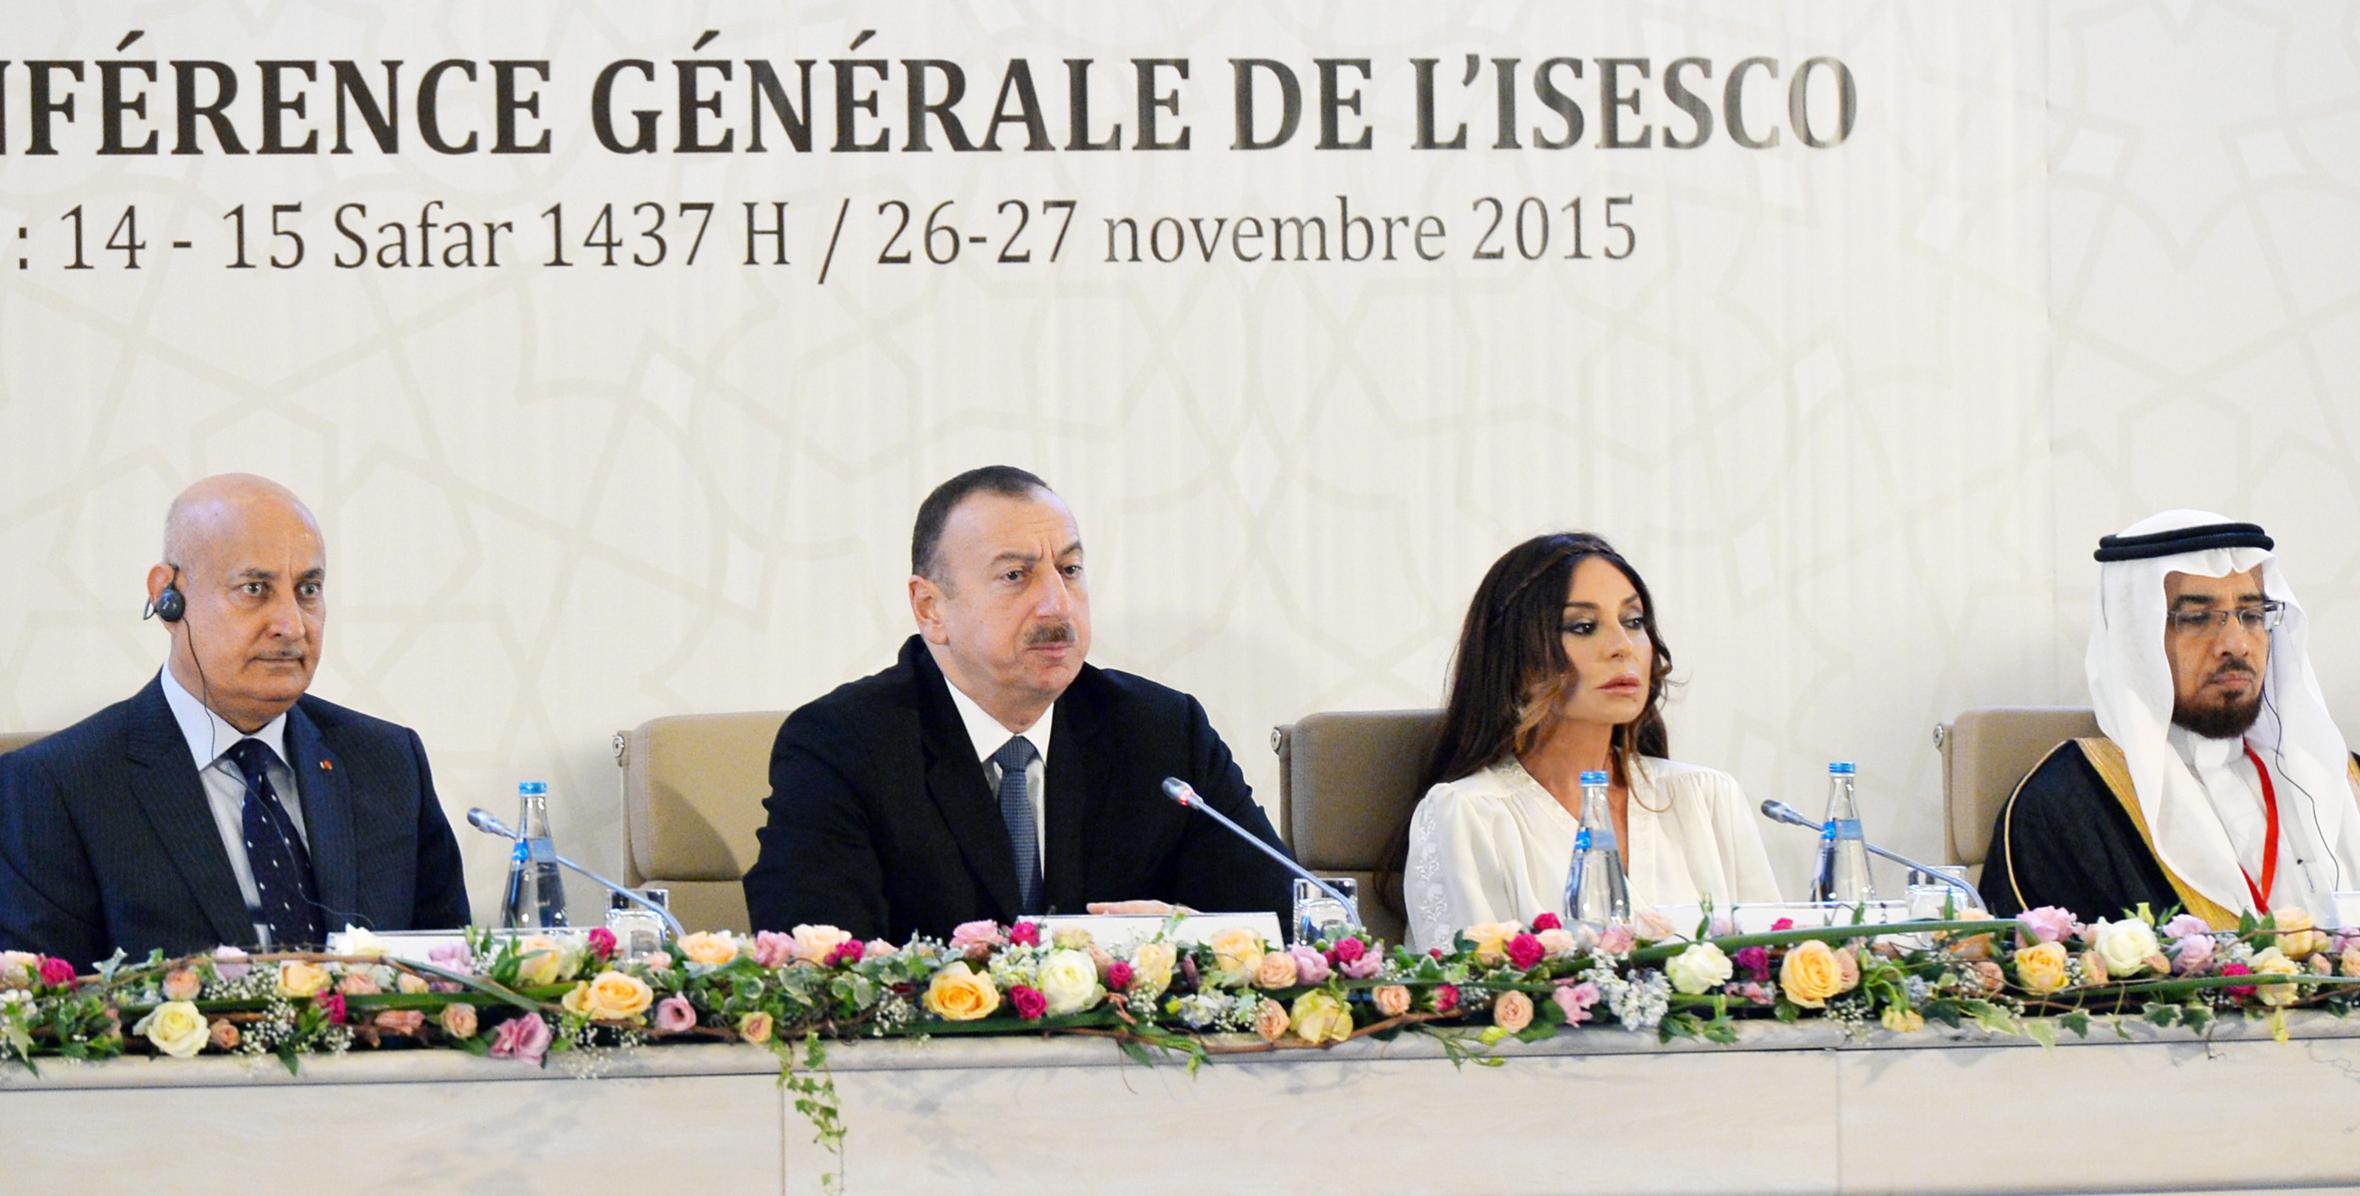 Речь Ильхама Алиева на открытии XII сессии Генеральной конференции ИСЕСКО